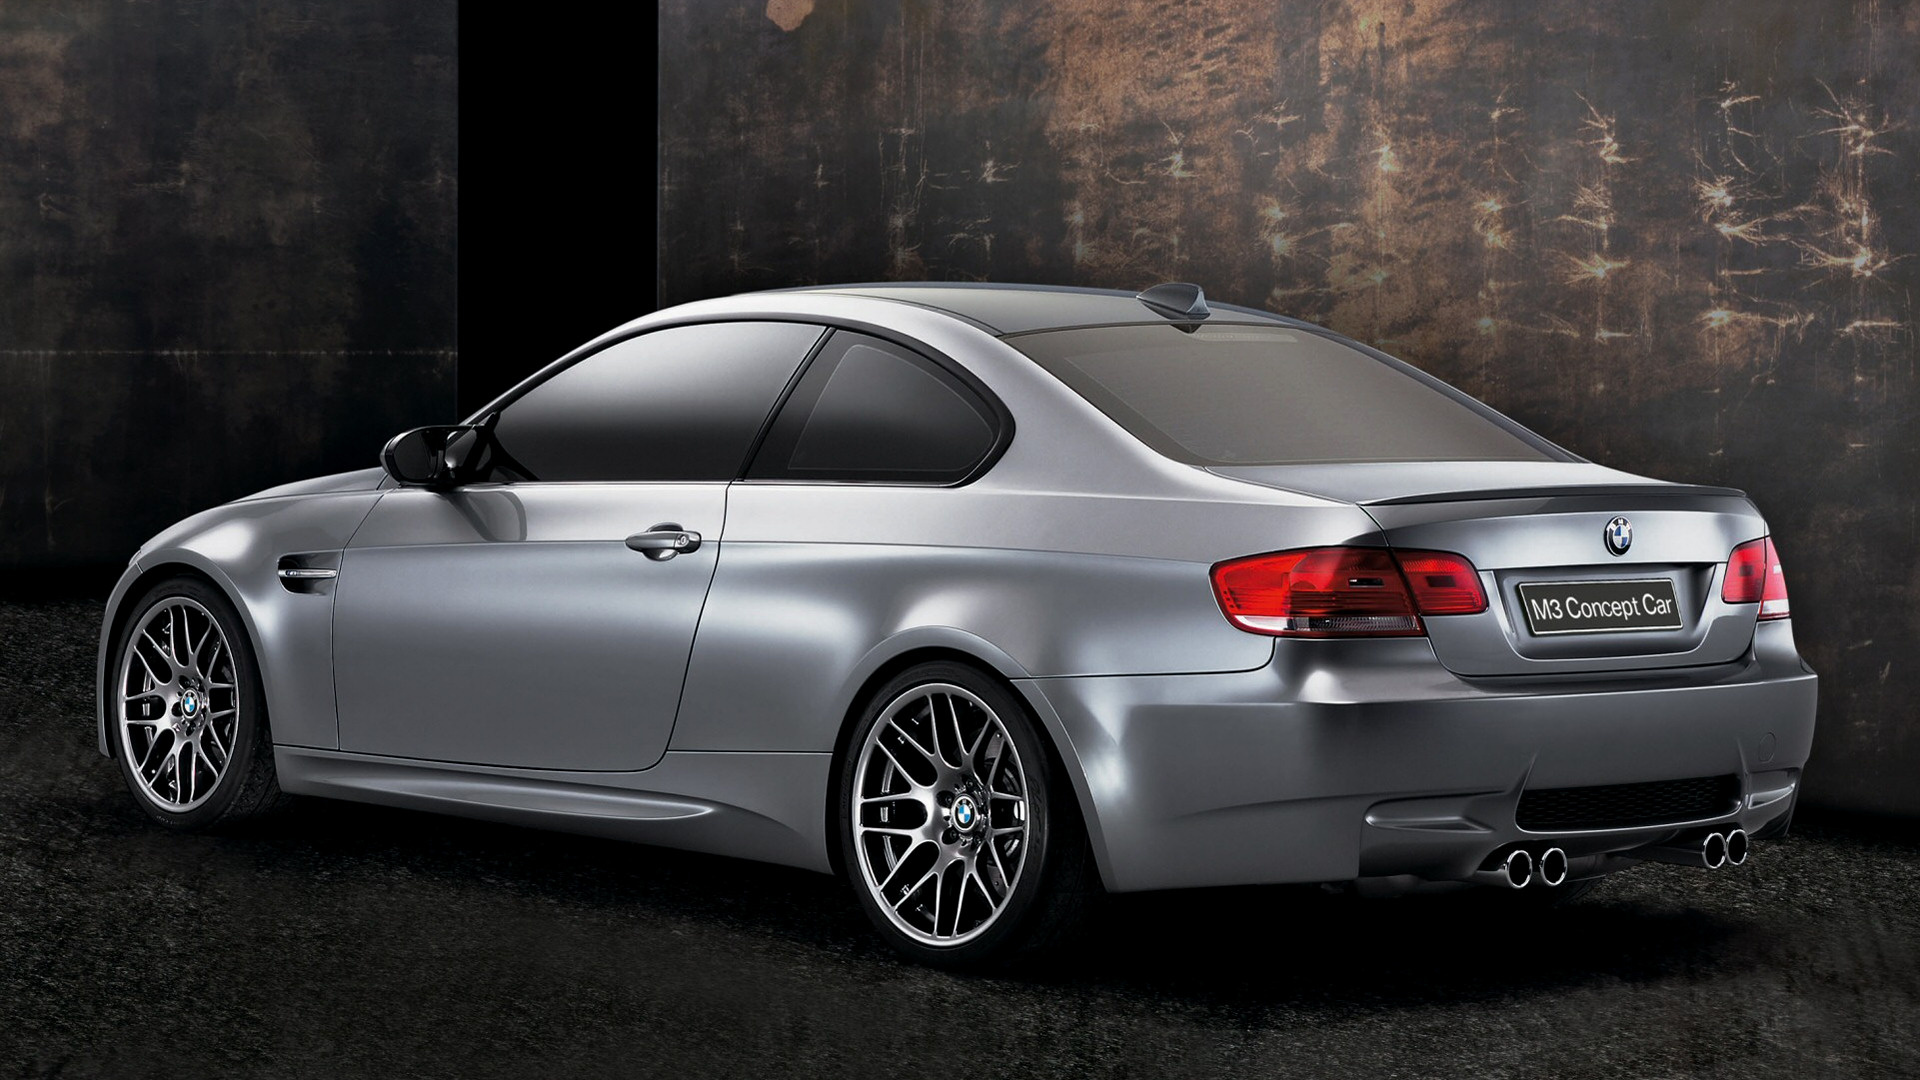 2007 BMW M3 Concept